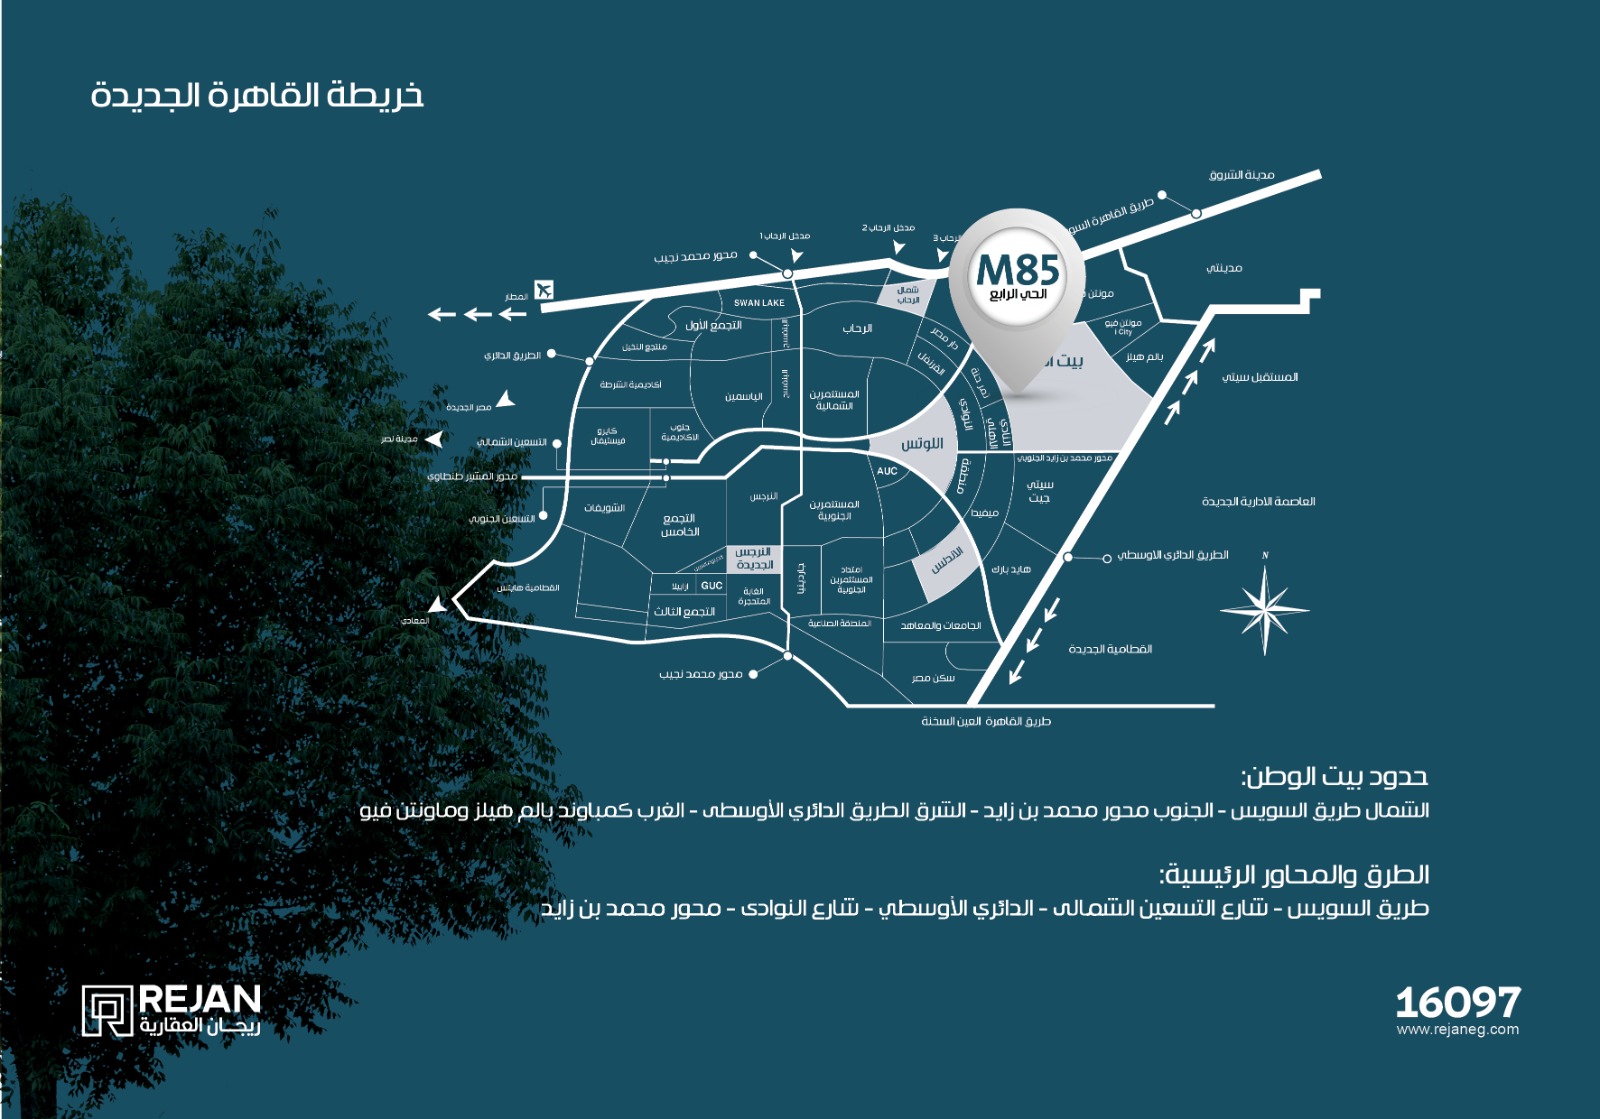 موقع مشروع M85بيت الوطن ف خريطة القاهرة الجديدة